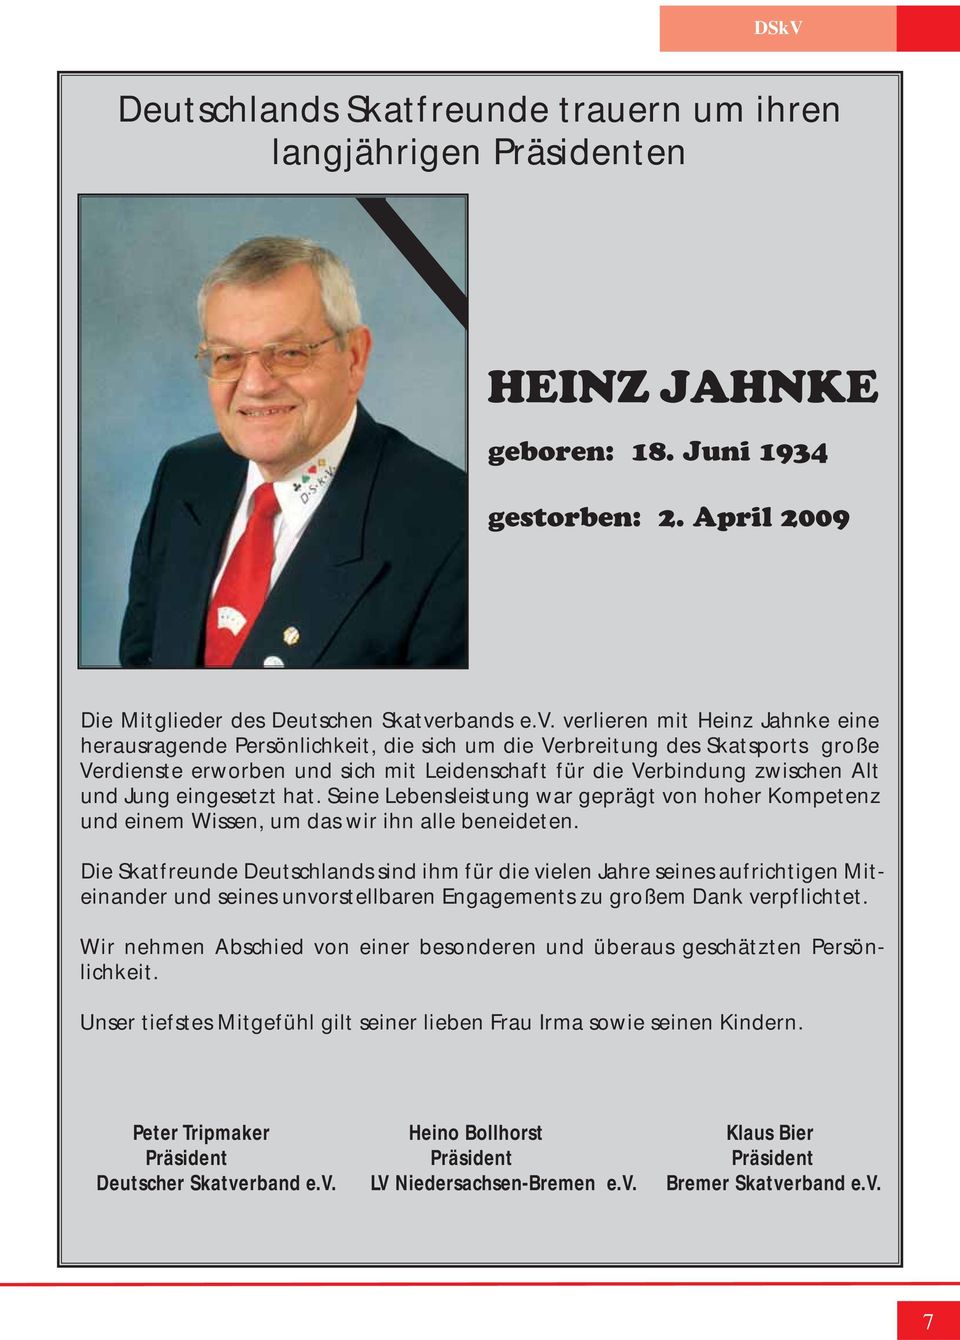 verlieren mit Heinz Jahnke eine herausragende Persönlichkeit, die sich um die Verbreitung des Skatsports große Verdienste erworben und sich mit Leidenschaft für die Verbindung zwischen Alt und Jung